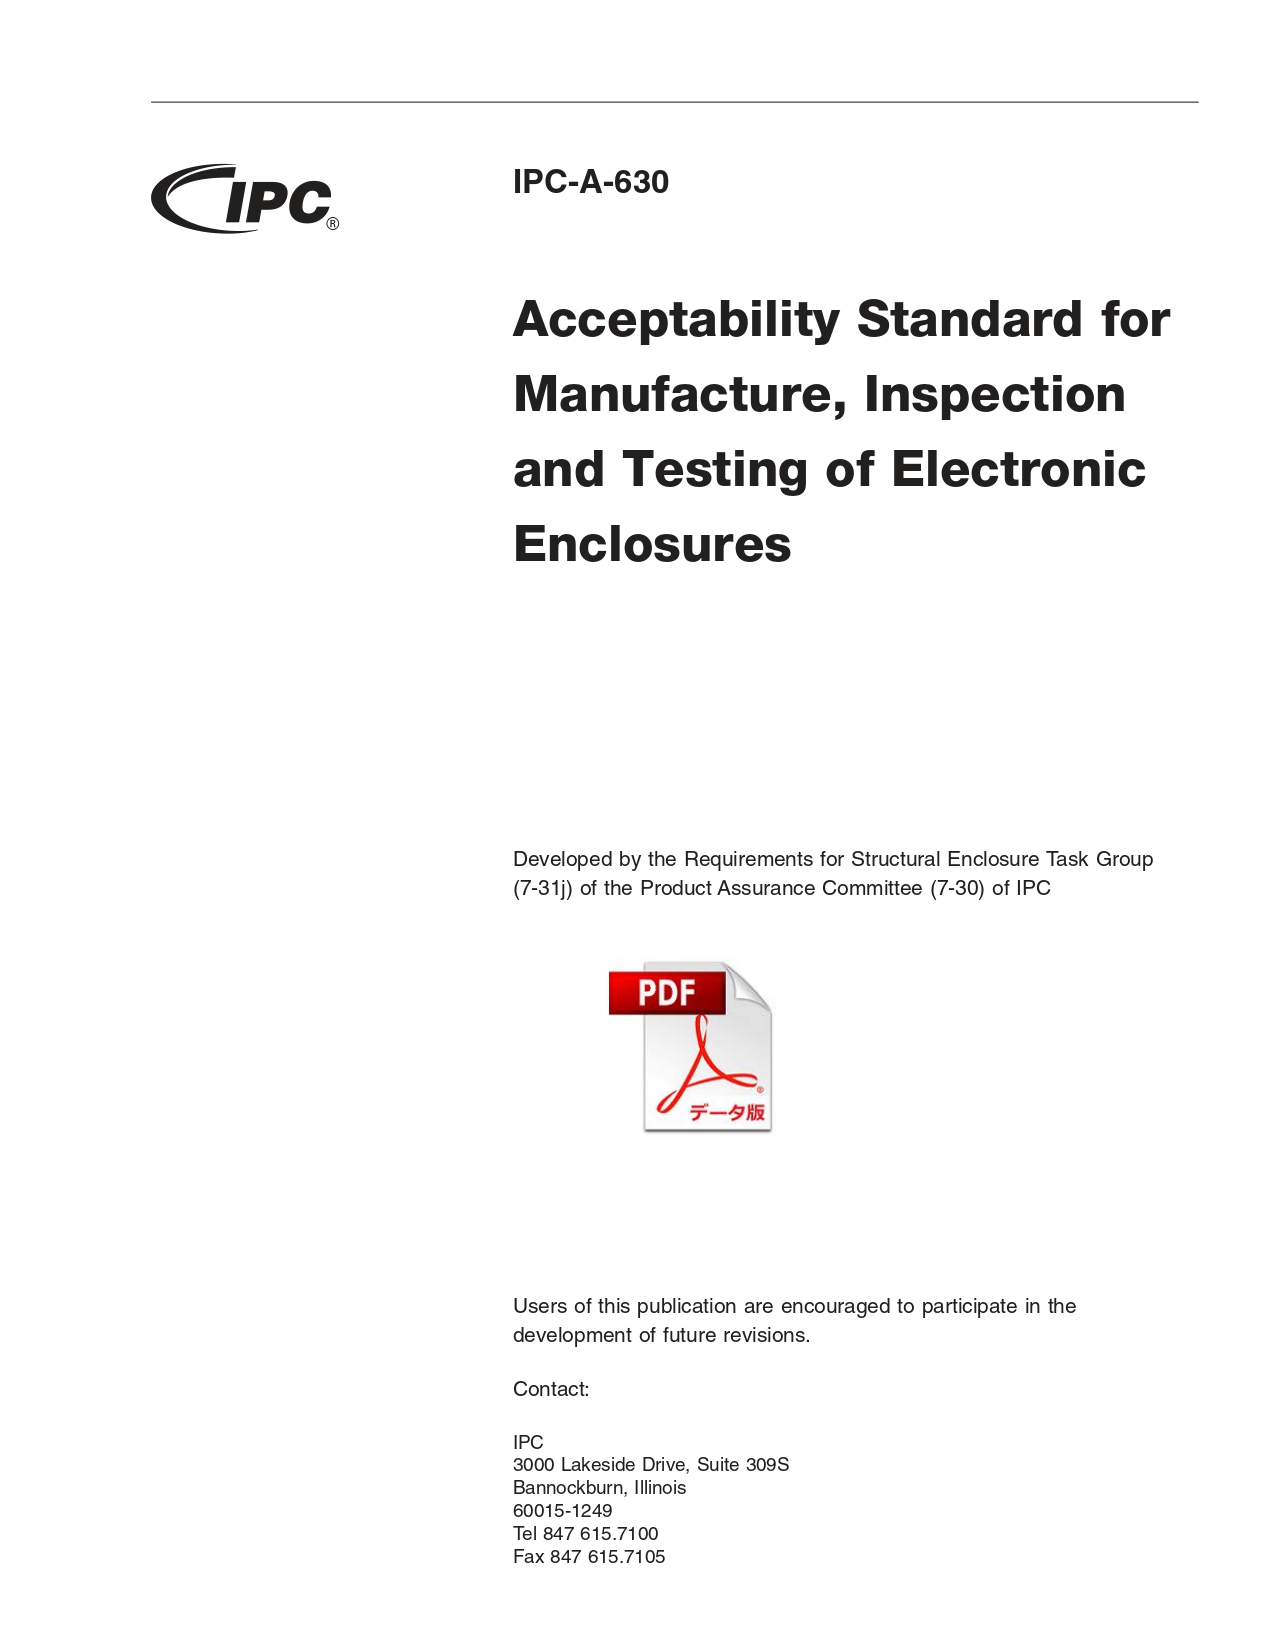 ［英語版］IPC-A-630: Acceptability Standard for Manufacture, Inspection, and Testing of Electronic Enclosures